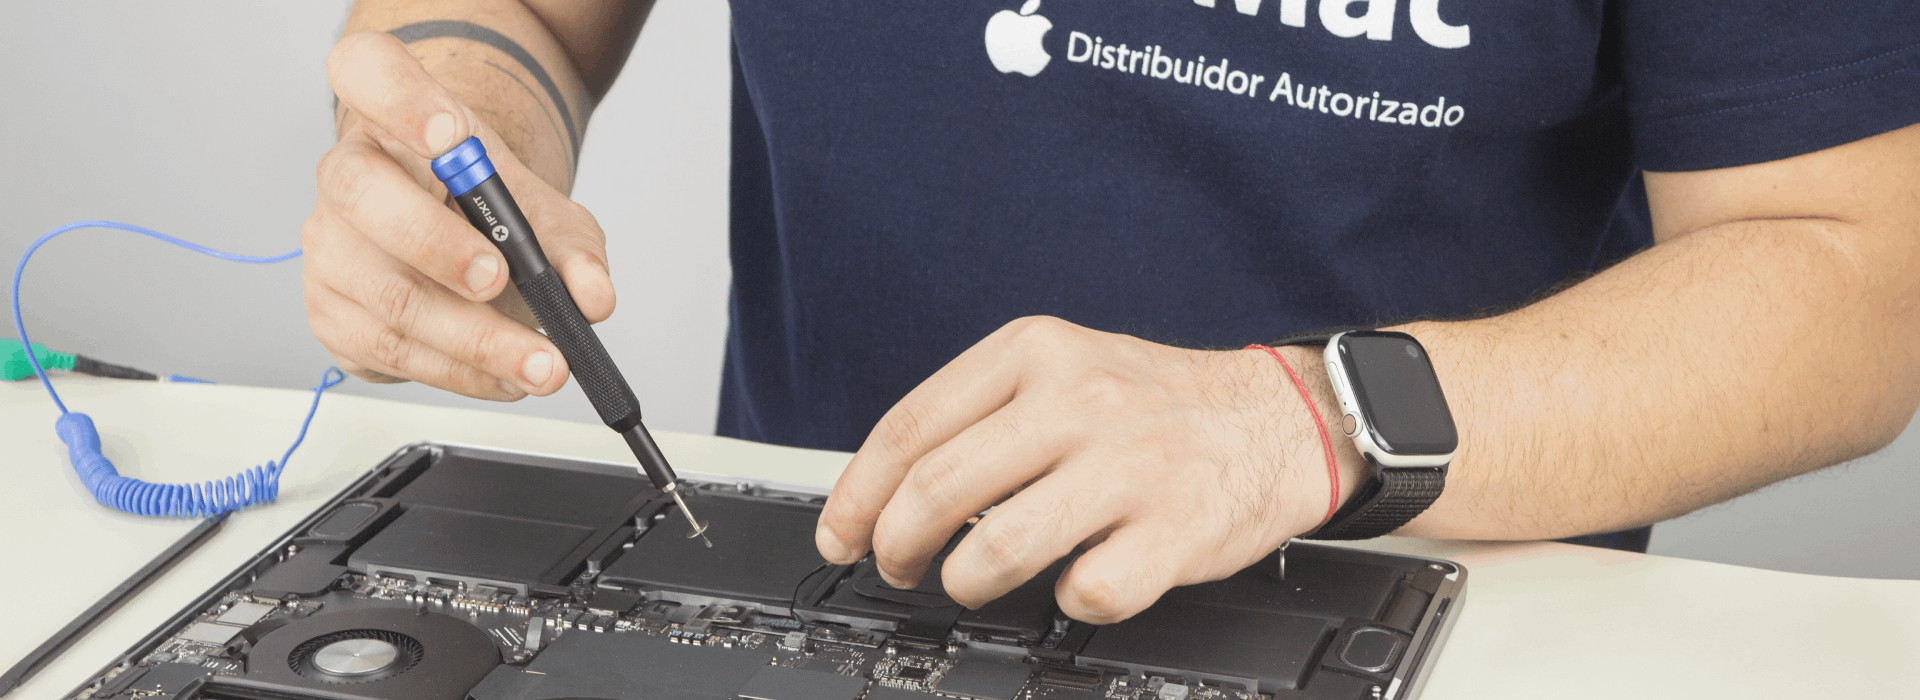 MundoMac distribuidor Autorizado Apple - Venta y servicio técnico –  MundoMac Uruguay